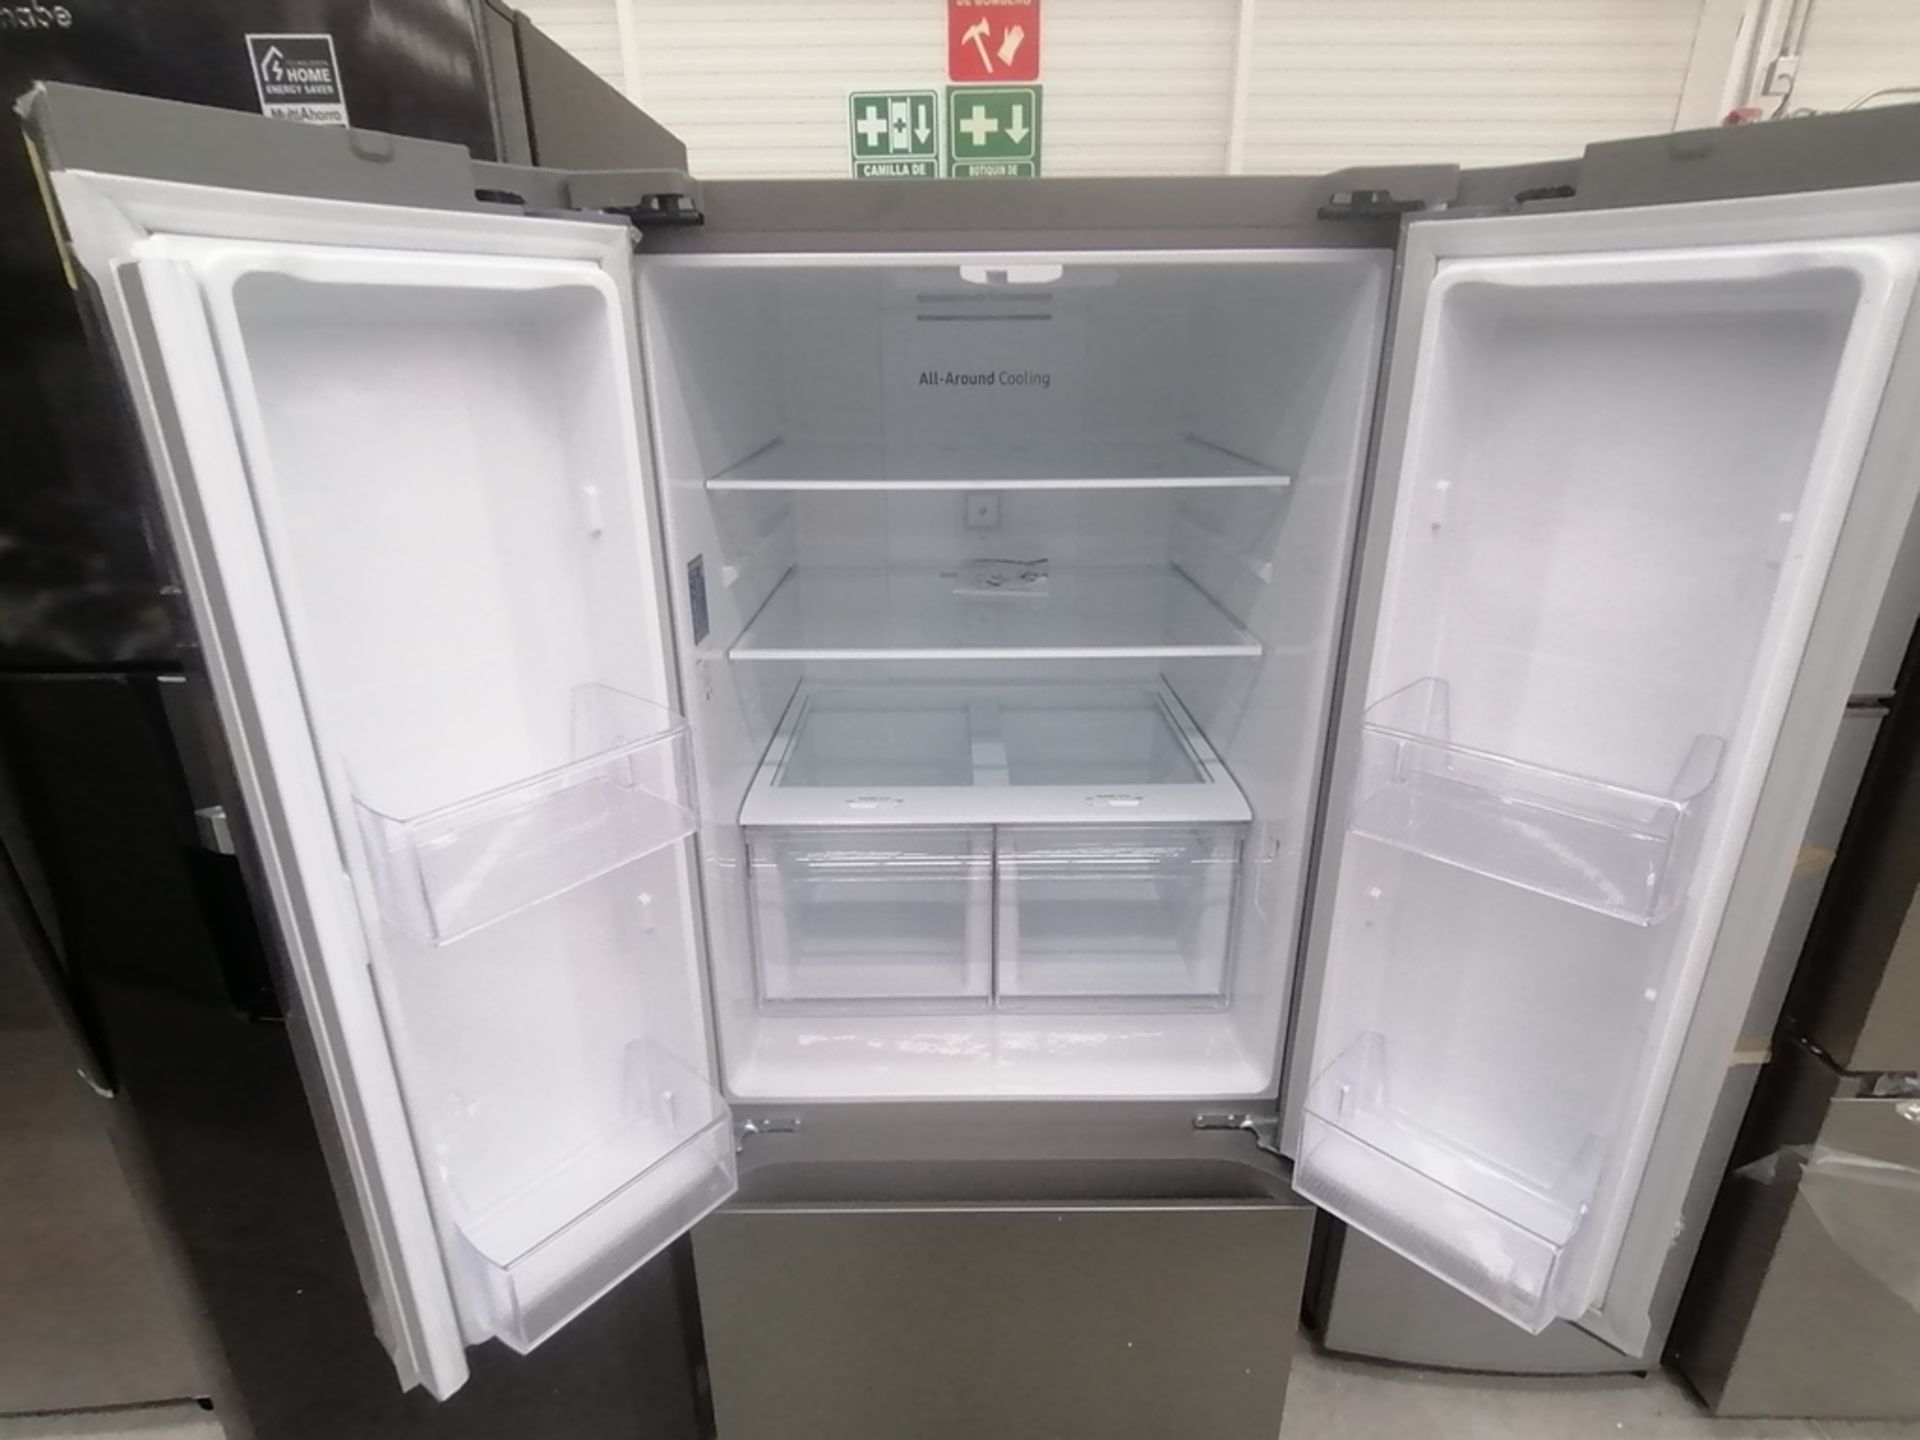 Lote de 2 refrigeradores incluye: 1 Refrigerador, Marca Samsung, Modelo RT22A401059, Serie 8BA84BBR - Image 8 of 15